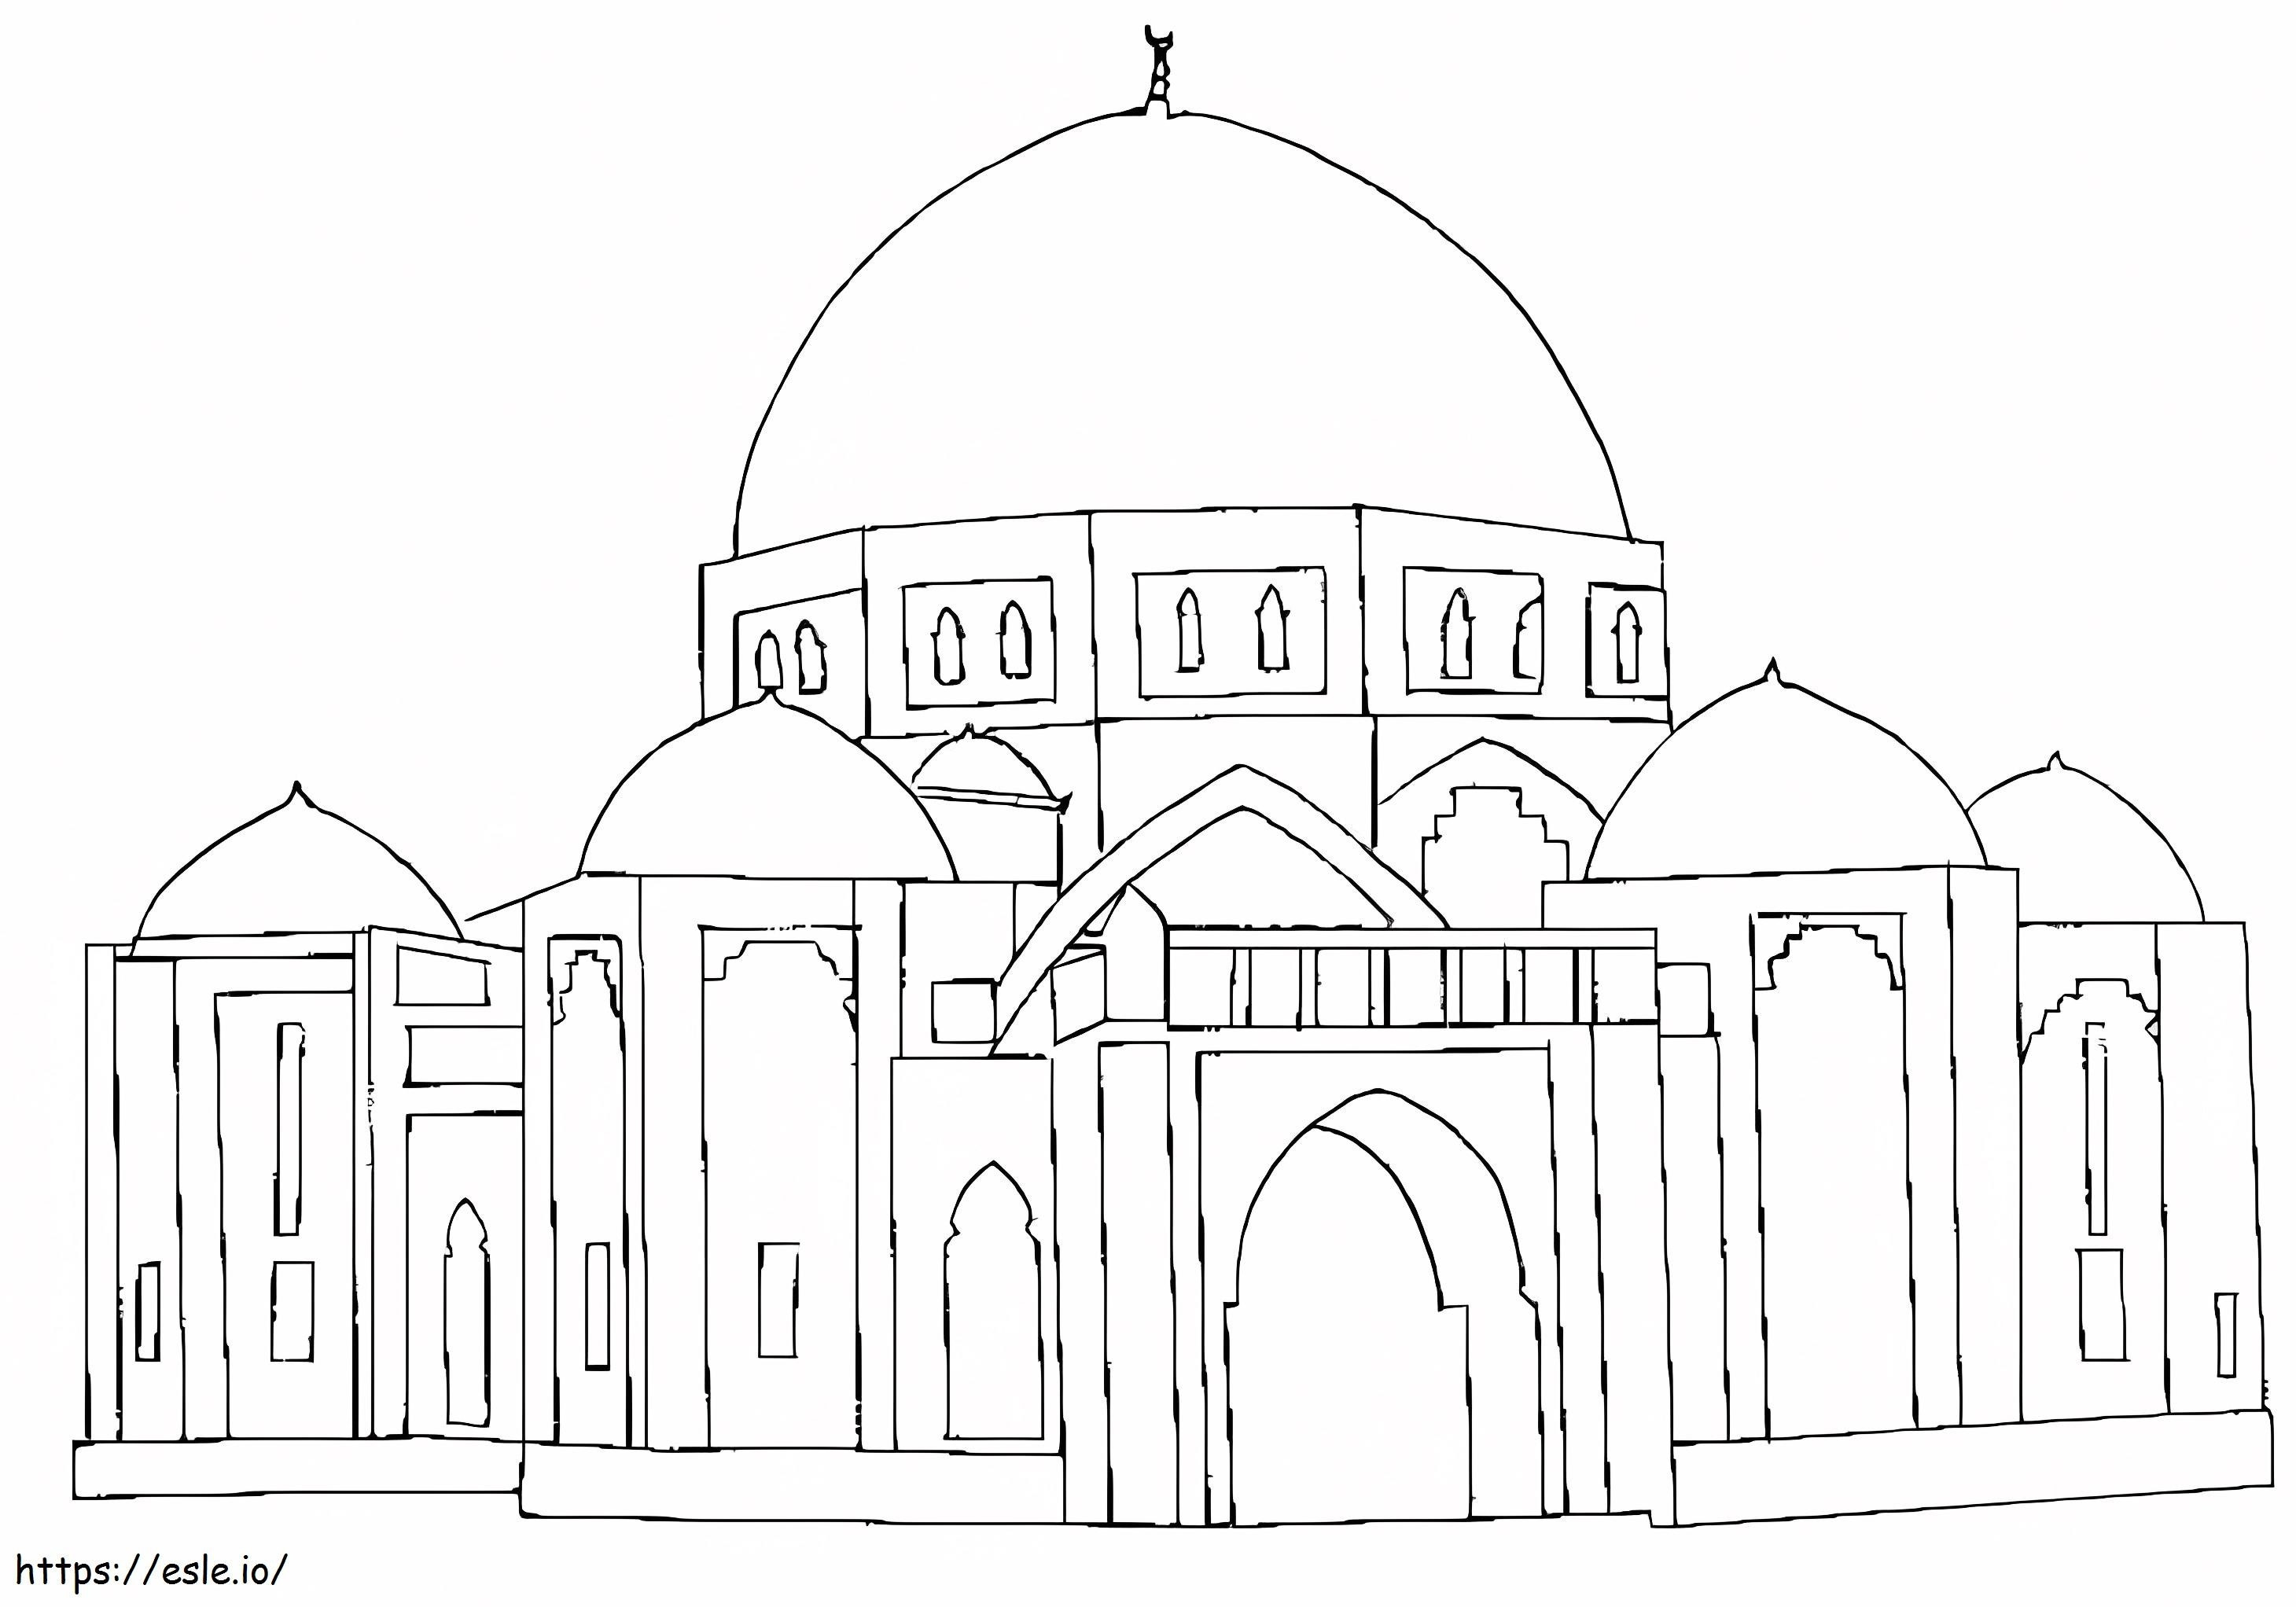 Mecset nyomtatásra kifestő